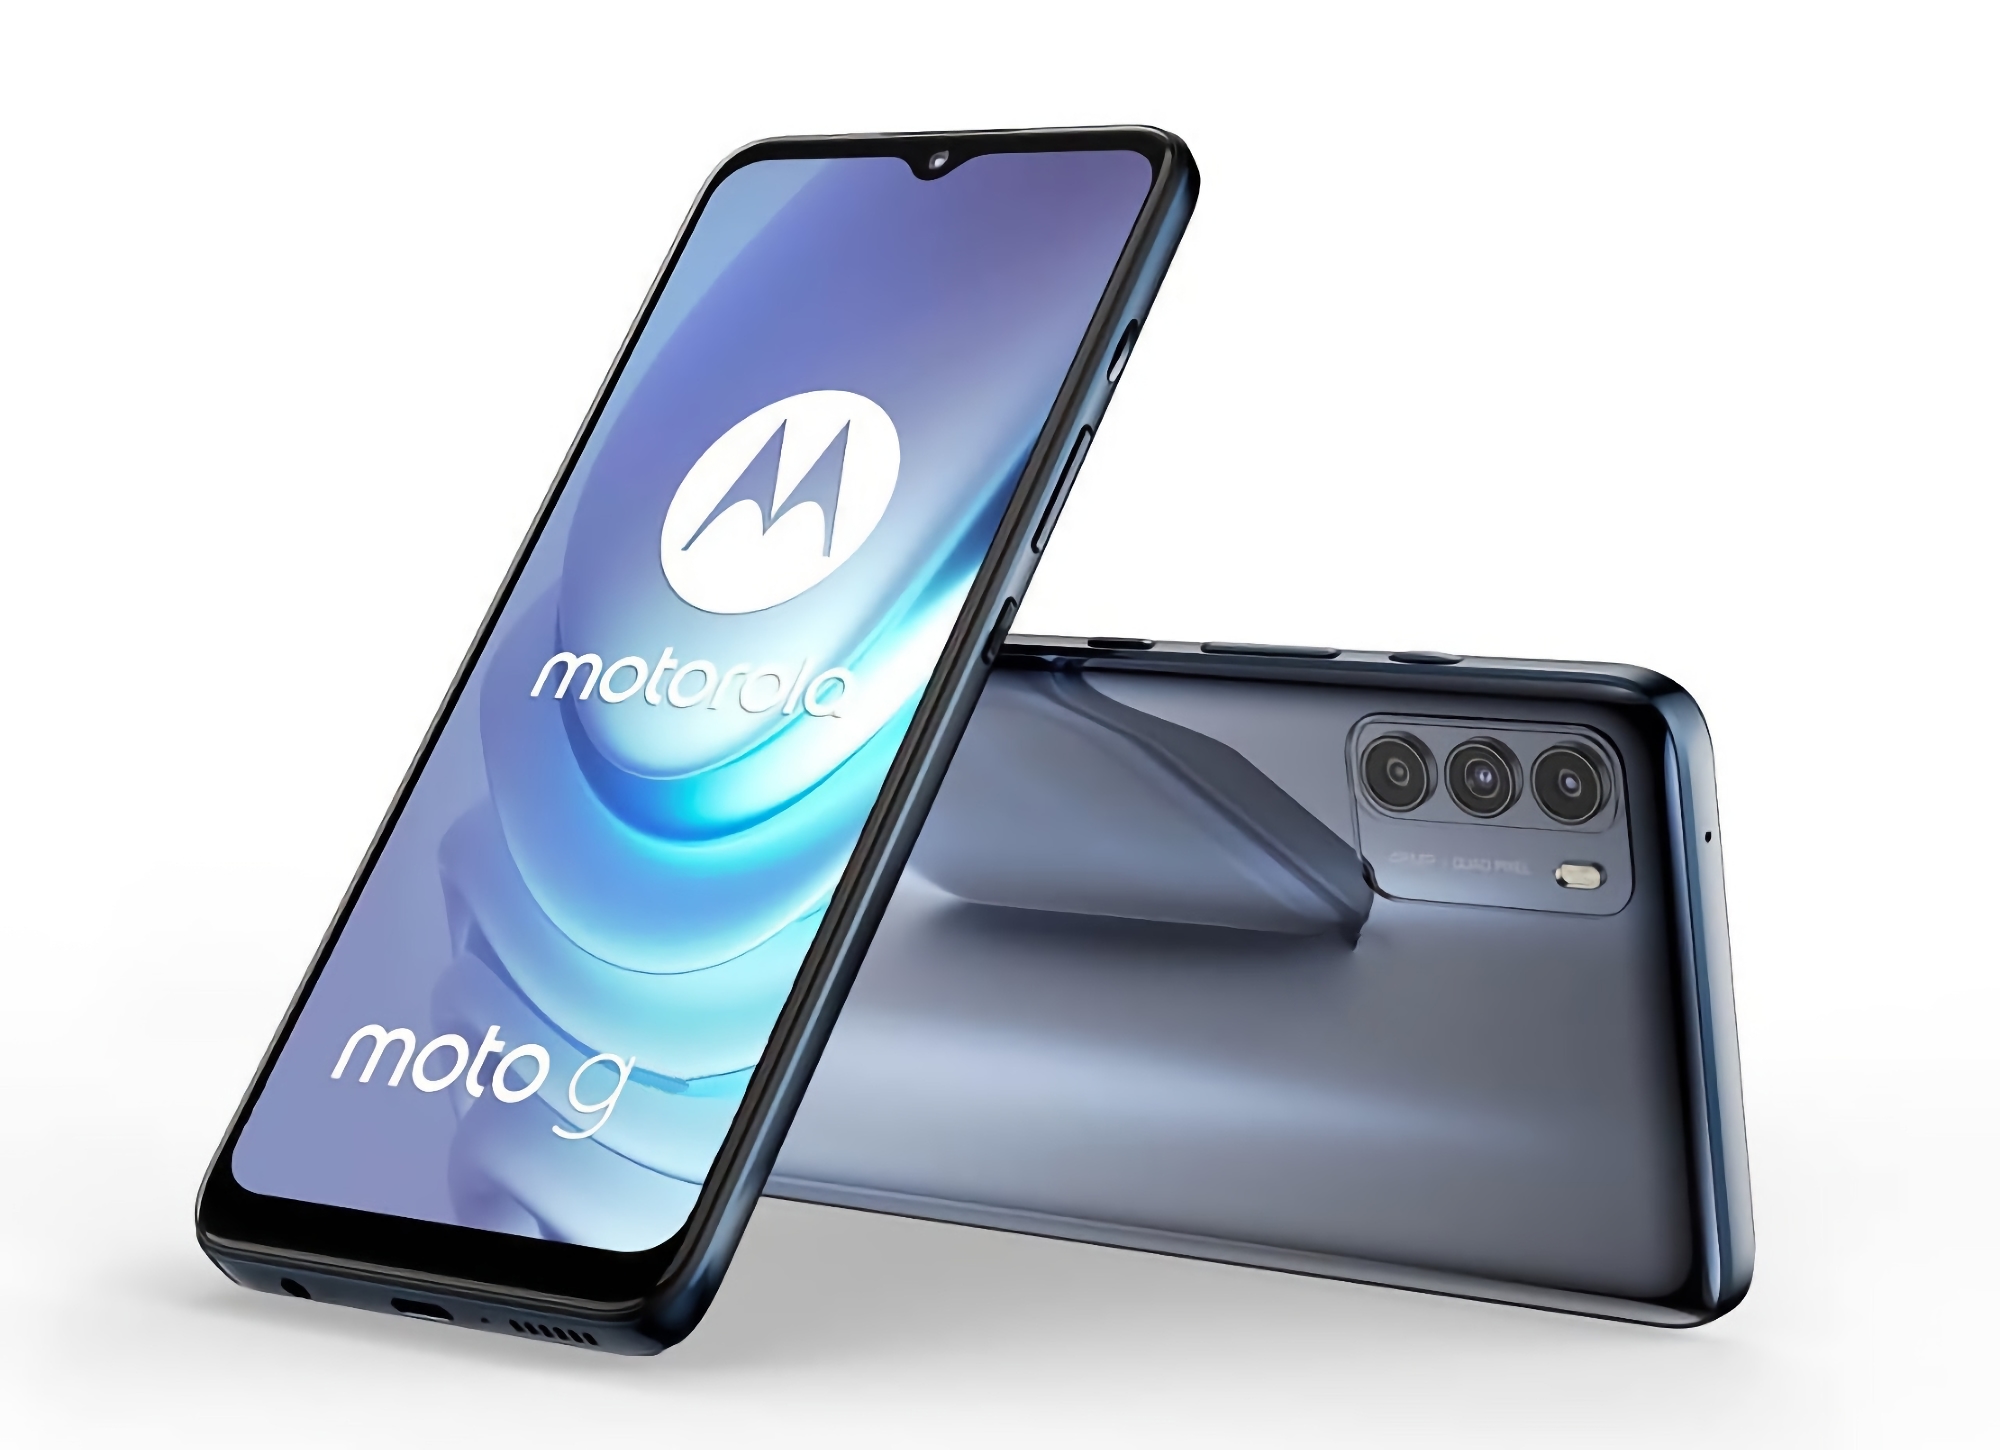 Szczegóły Moto G71 5G ujawnione: smartfon z układem Snapdragon 695, ochroną IP52 i potrójnym aparatem 50 MP